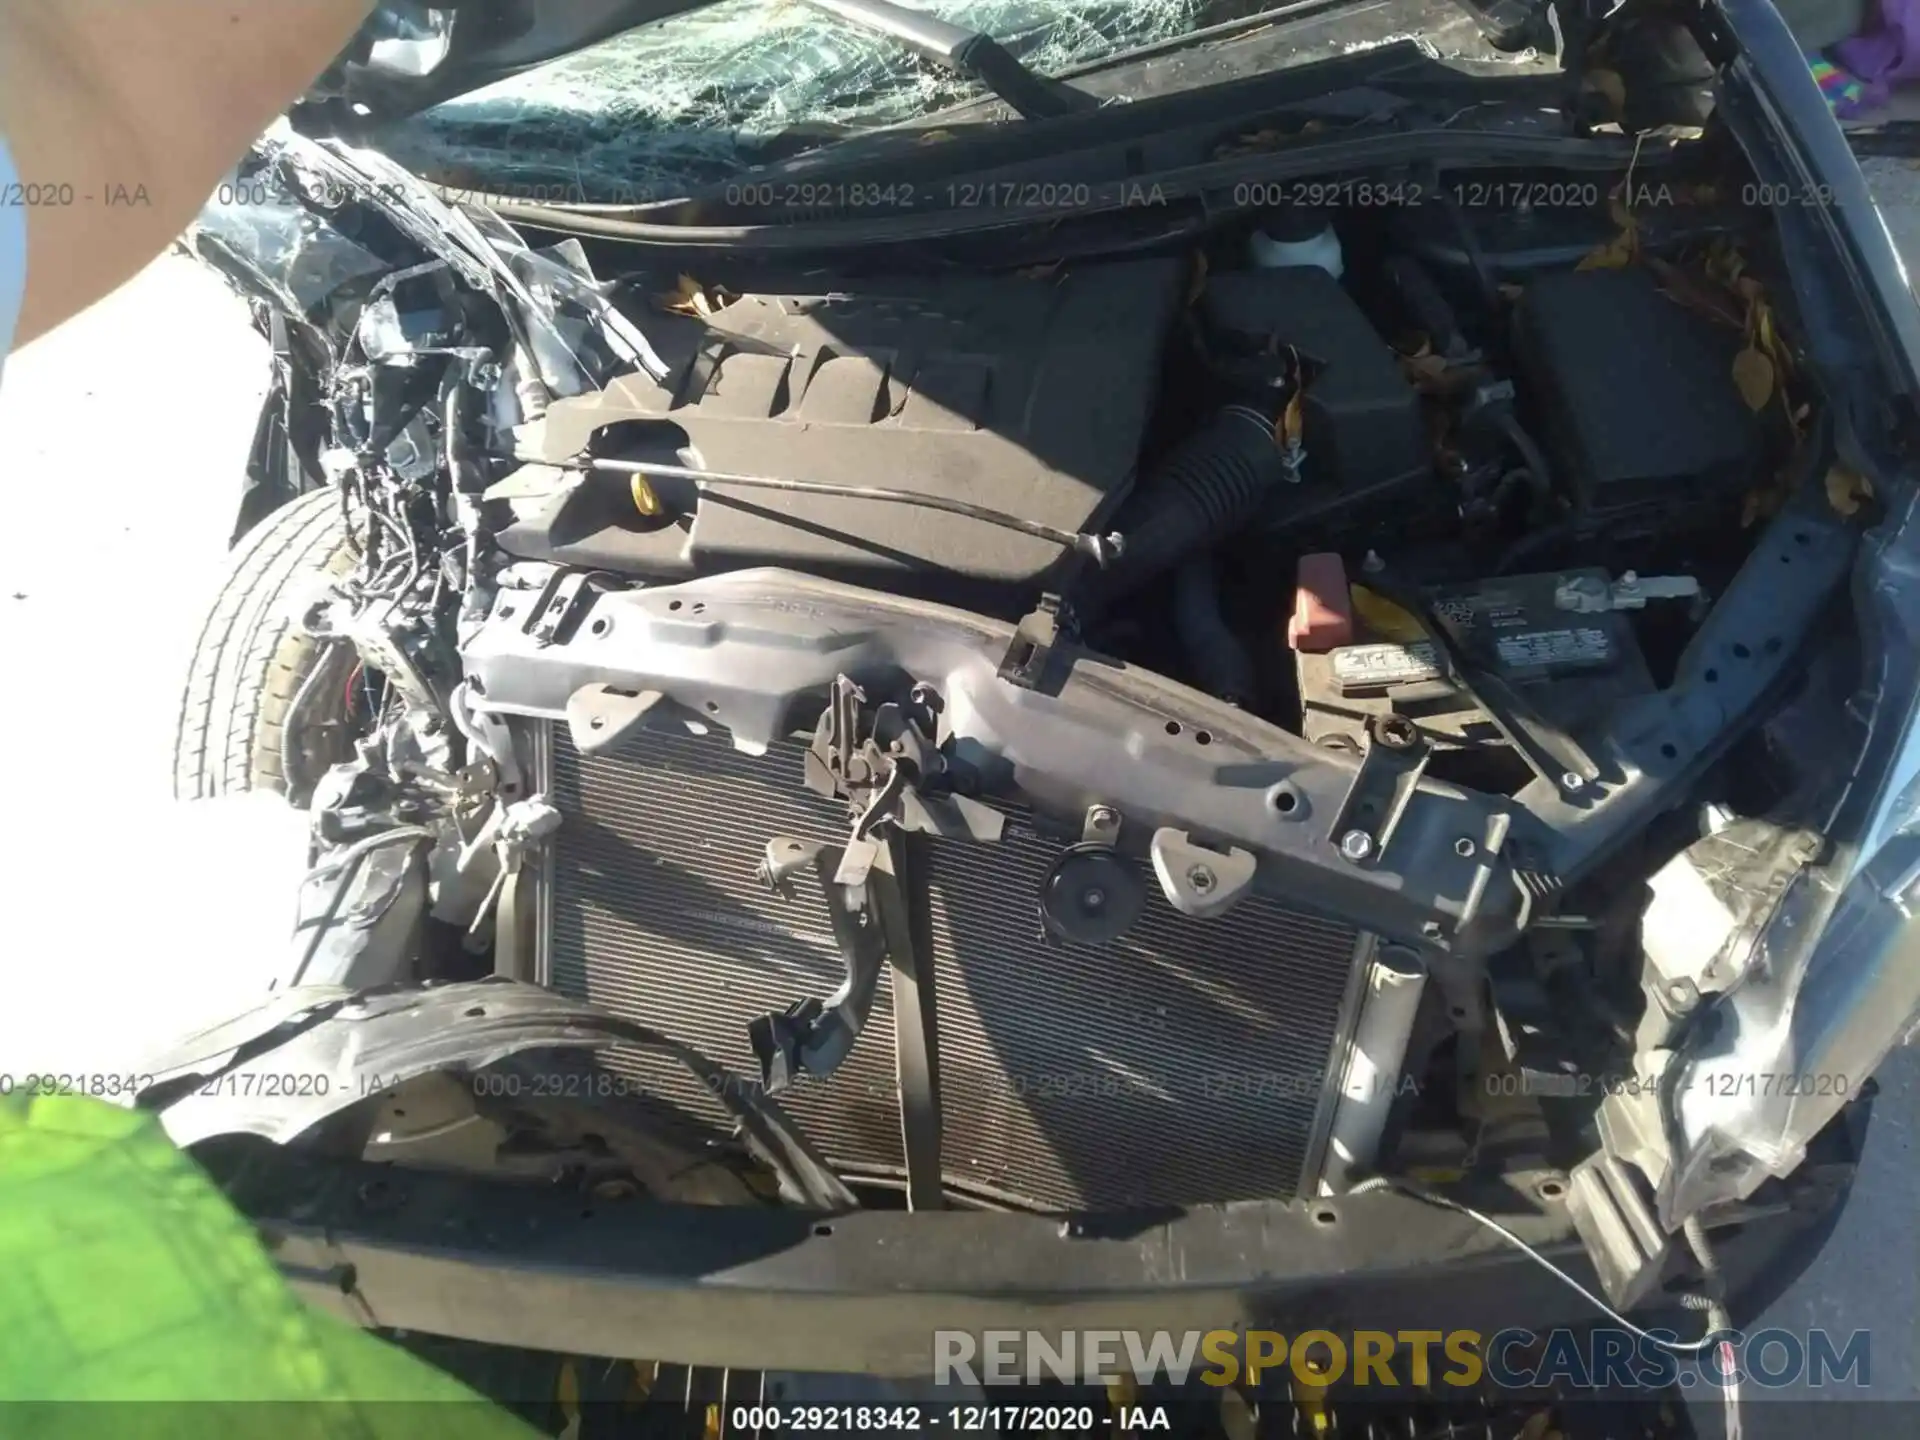 10 Photograph of a damaged car 5YFBURHE8KP904107 TOYOTA COROLLA 2019